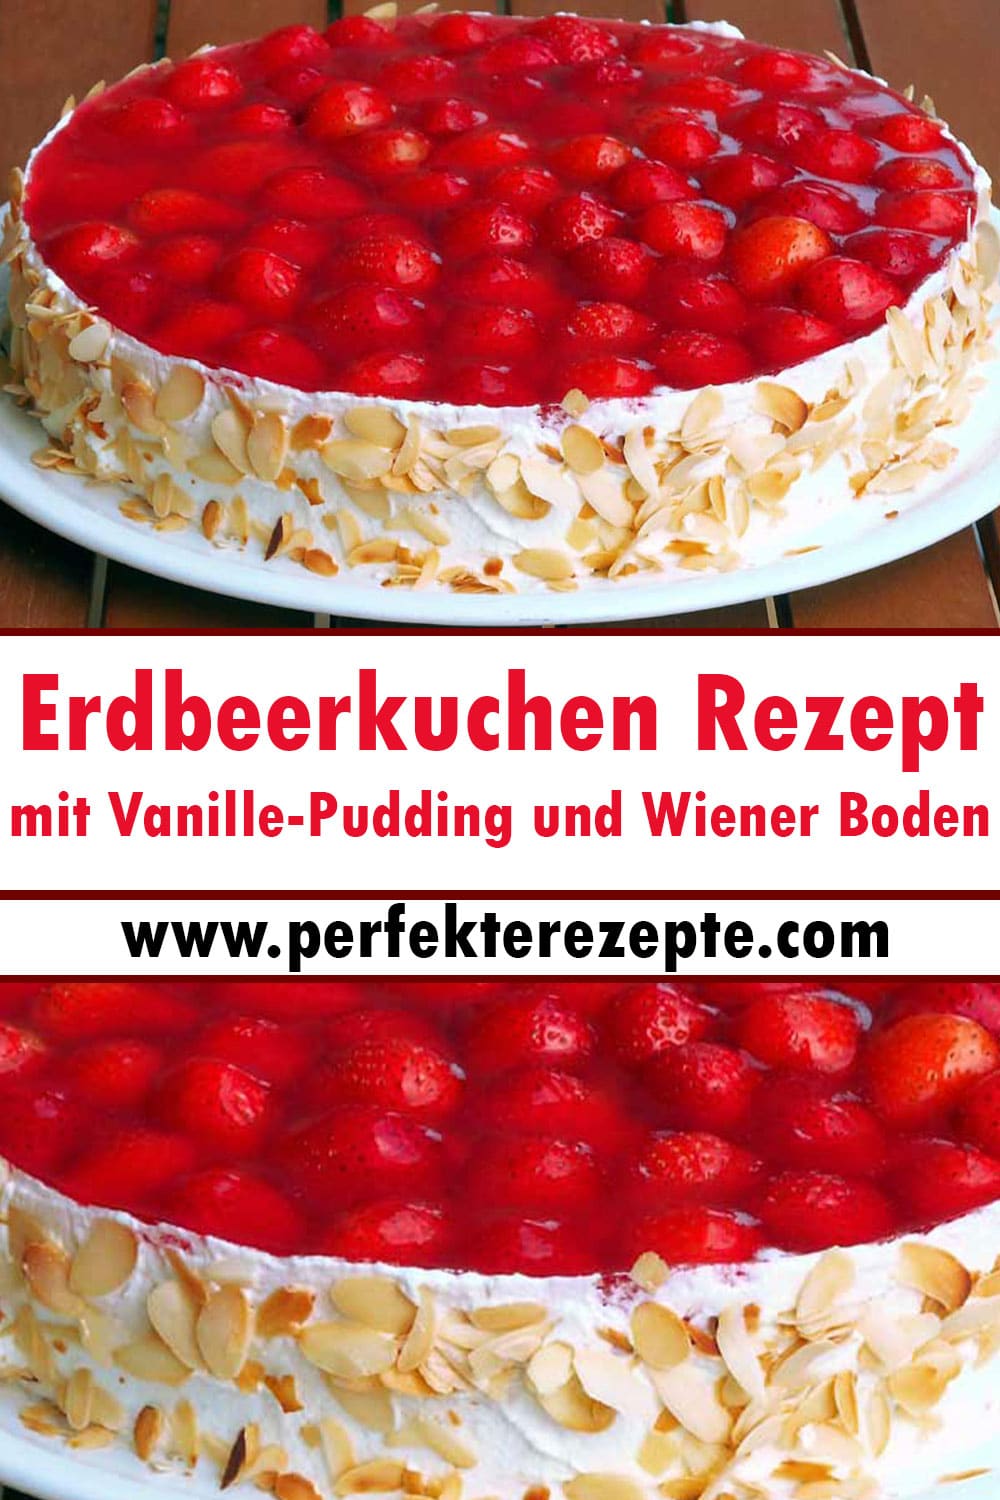 Erdbeerkuchen mit Vanille-Pudding und Wiener Boden Rezept